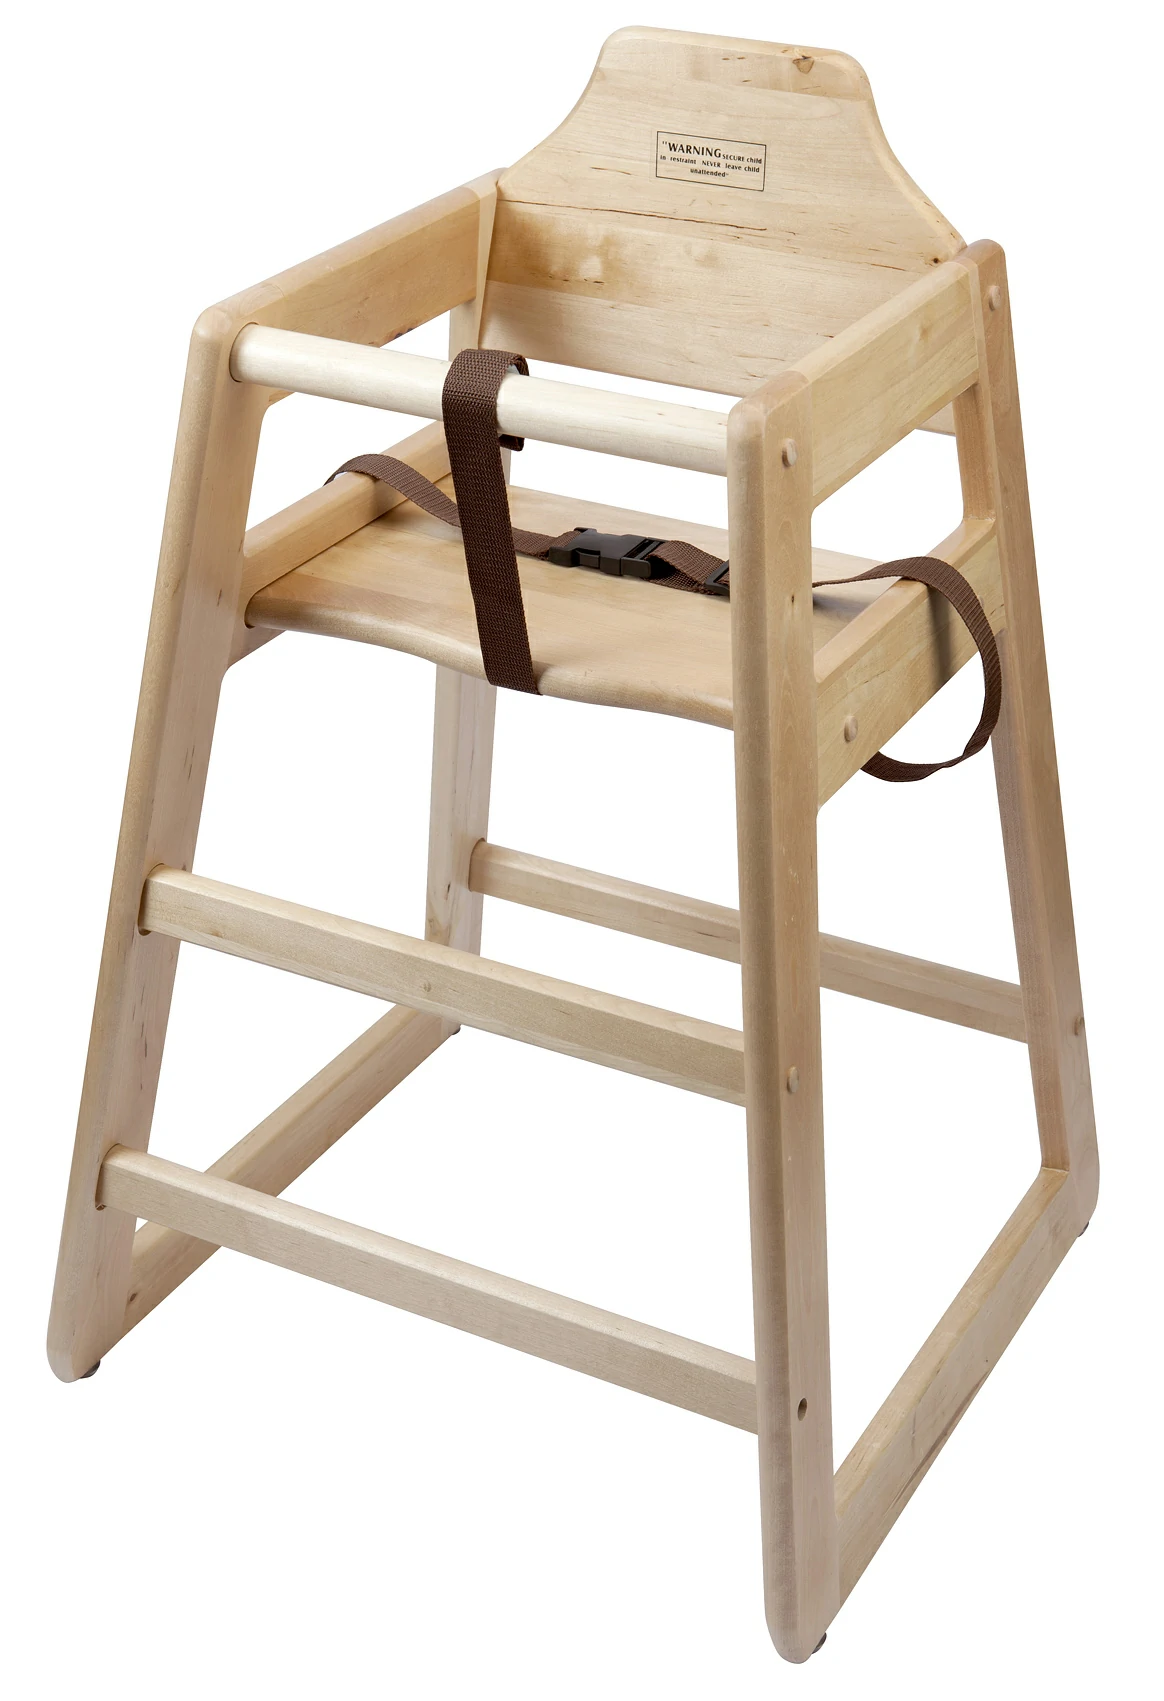 Wooden High Chair - Light Wood